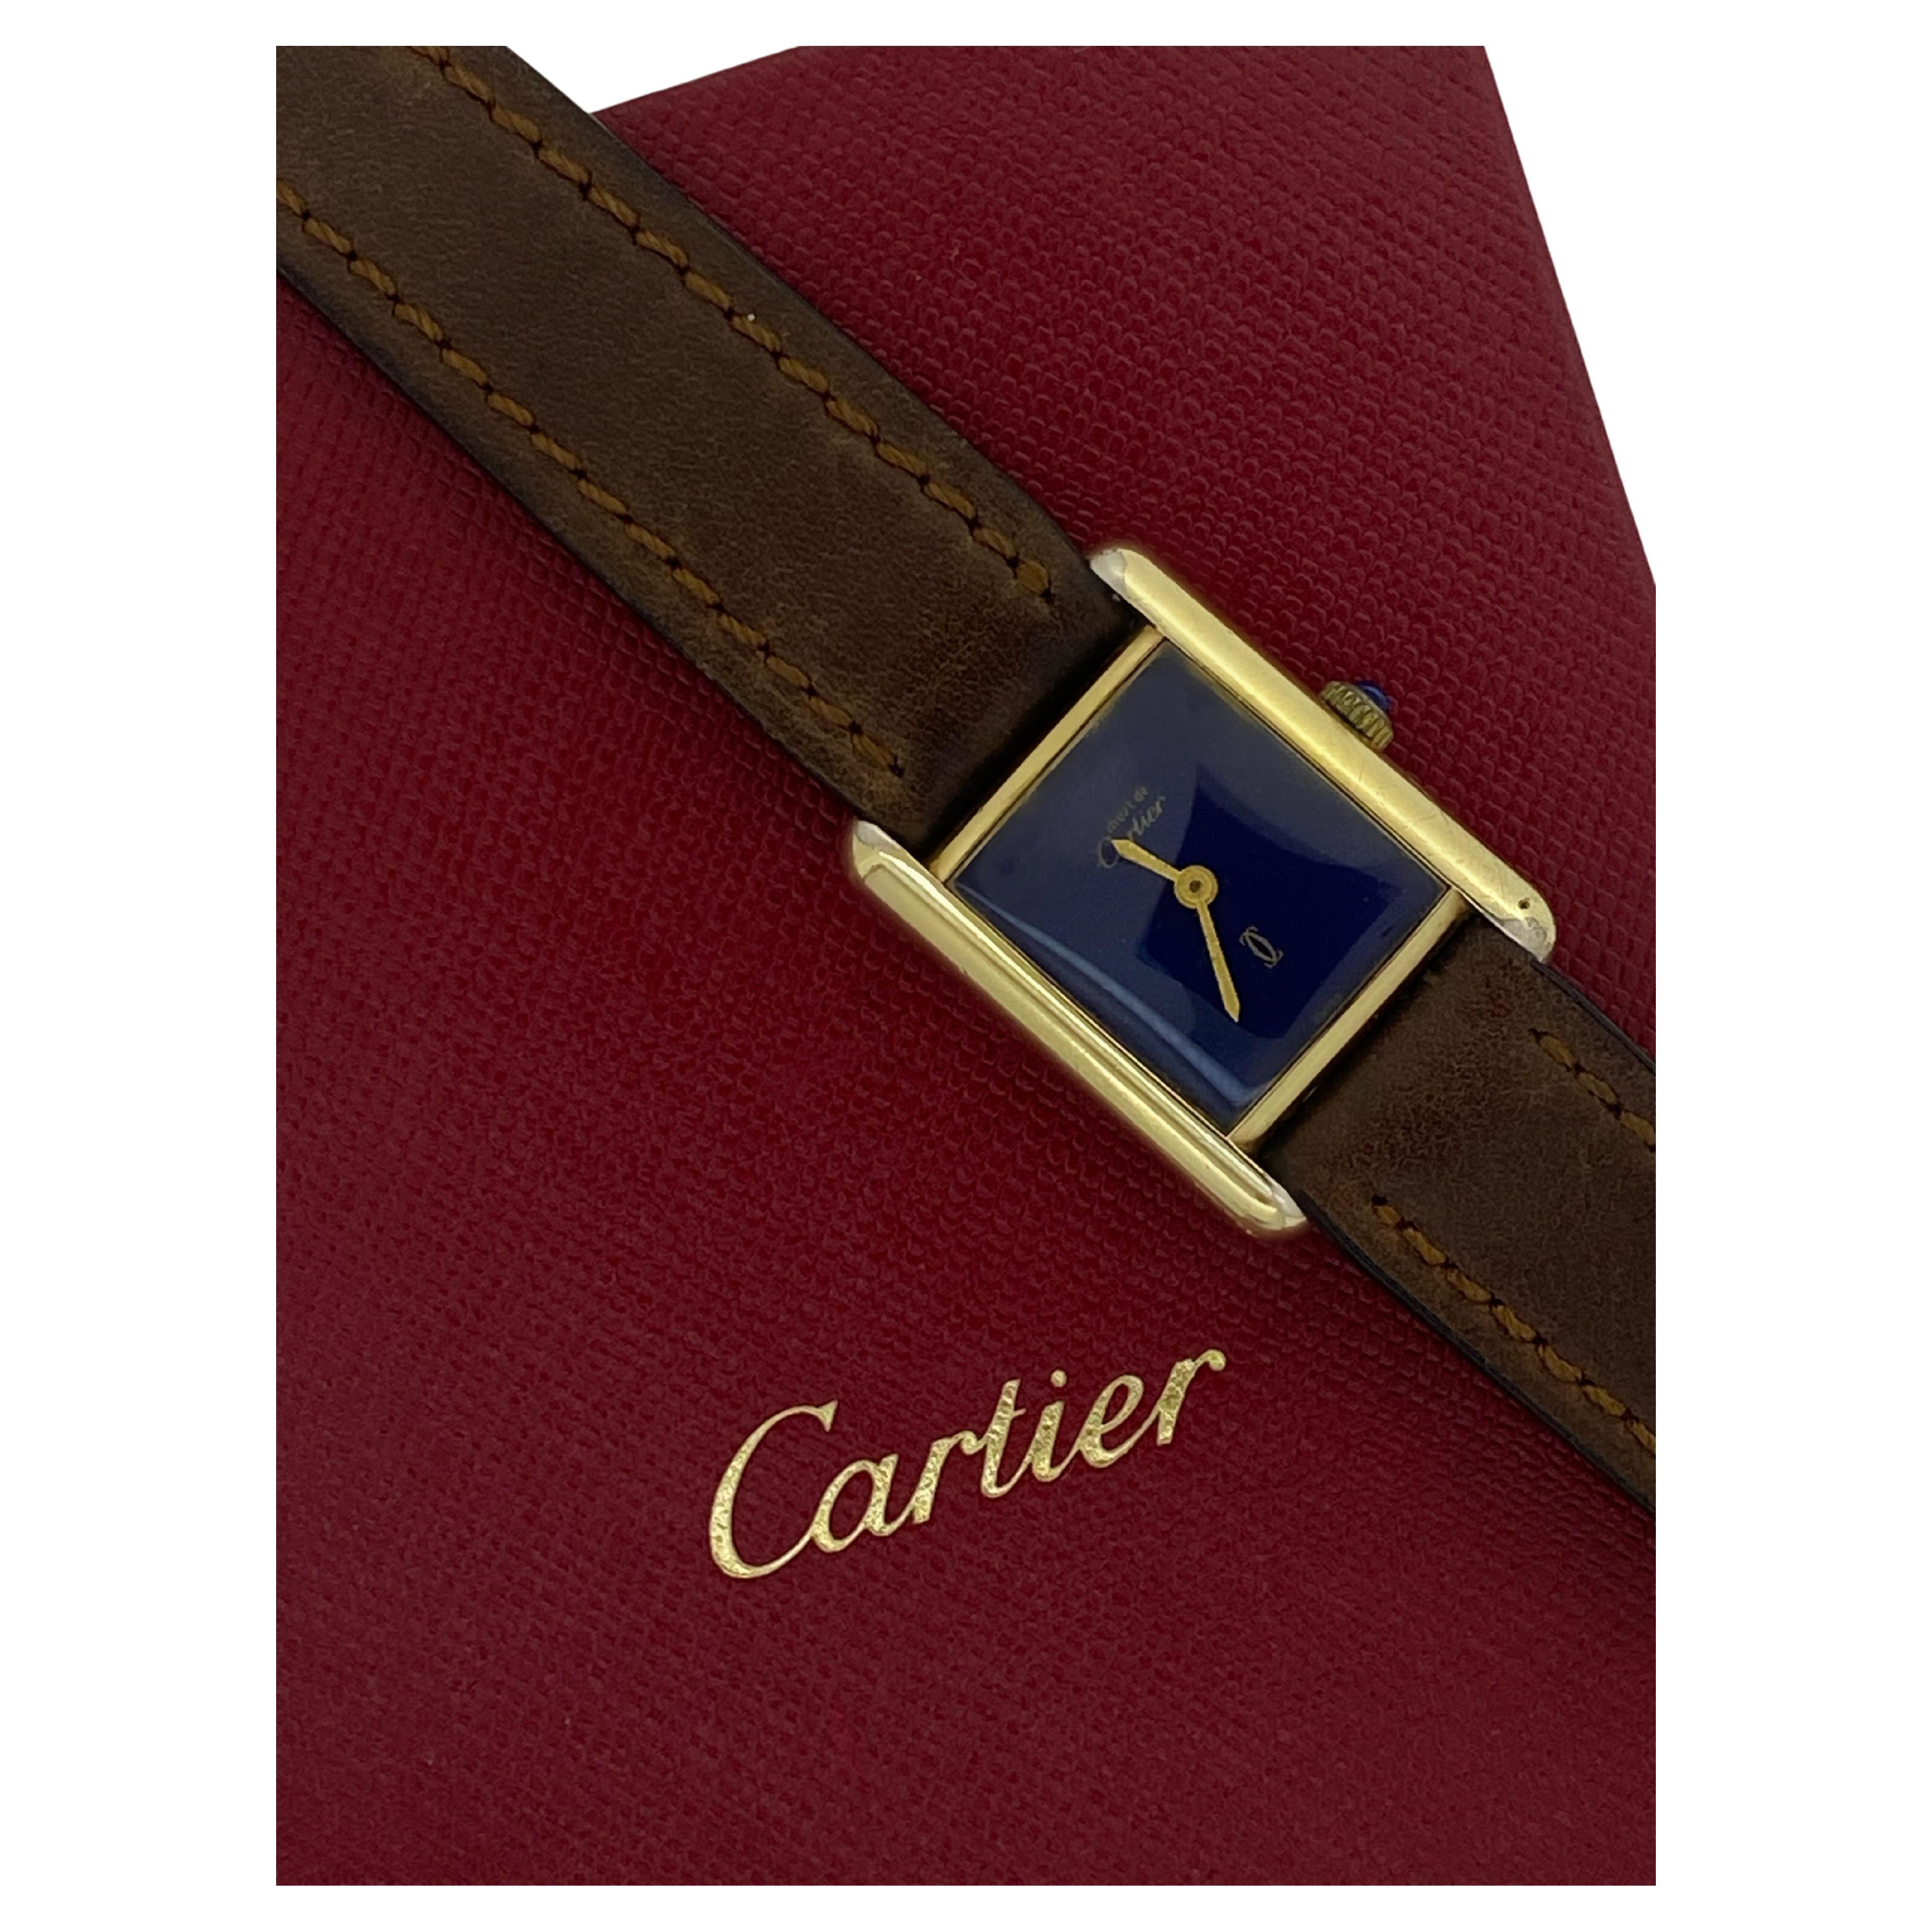 Es uno de los relojes más codiciados y deseados, 
este icónico Tanque Must de Cartier 
está en perfecto estado y funciona perfectamente 

Se remonta a la década de 2000
de diseño atemporal 
¡este reloj es una auténtica atracción!

~~~

El Caso